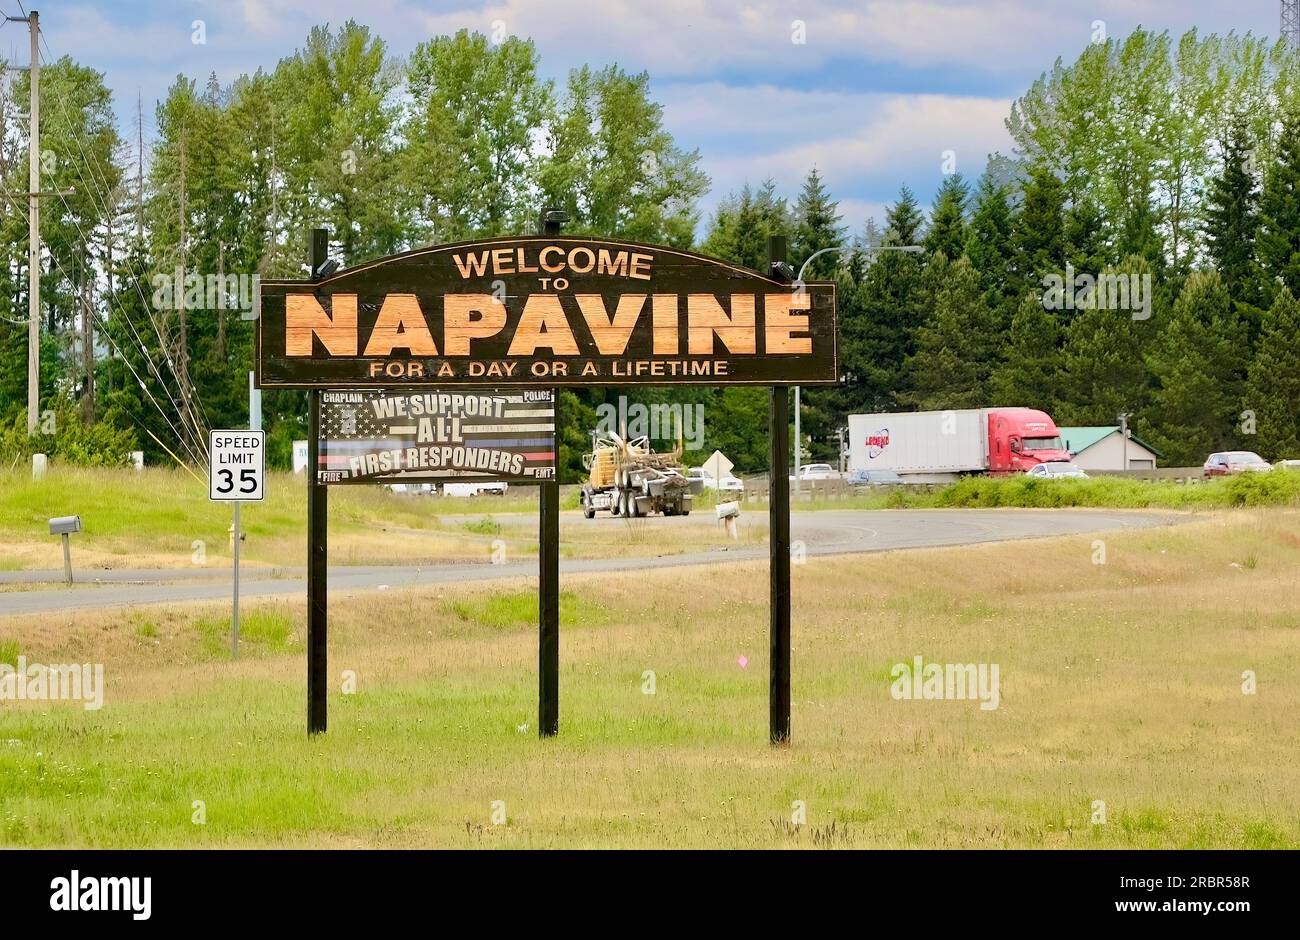 Vista dell'insegna per Napavine dall'interno di un'auto che guida verso nord sull'Interstate 5, contea di Napavine Lewis, Washington State, Stati Uniti Foto Stock